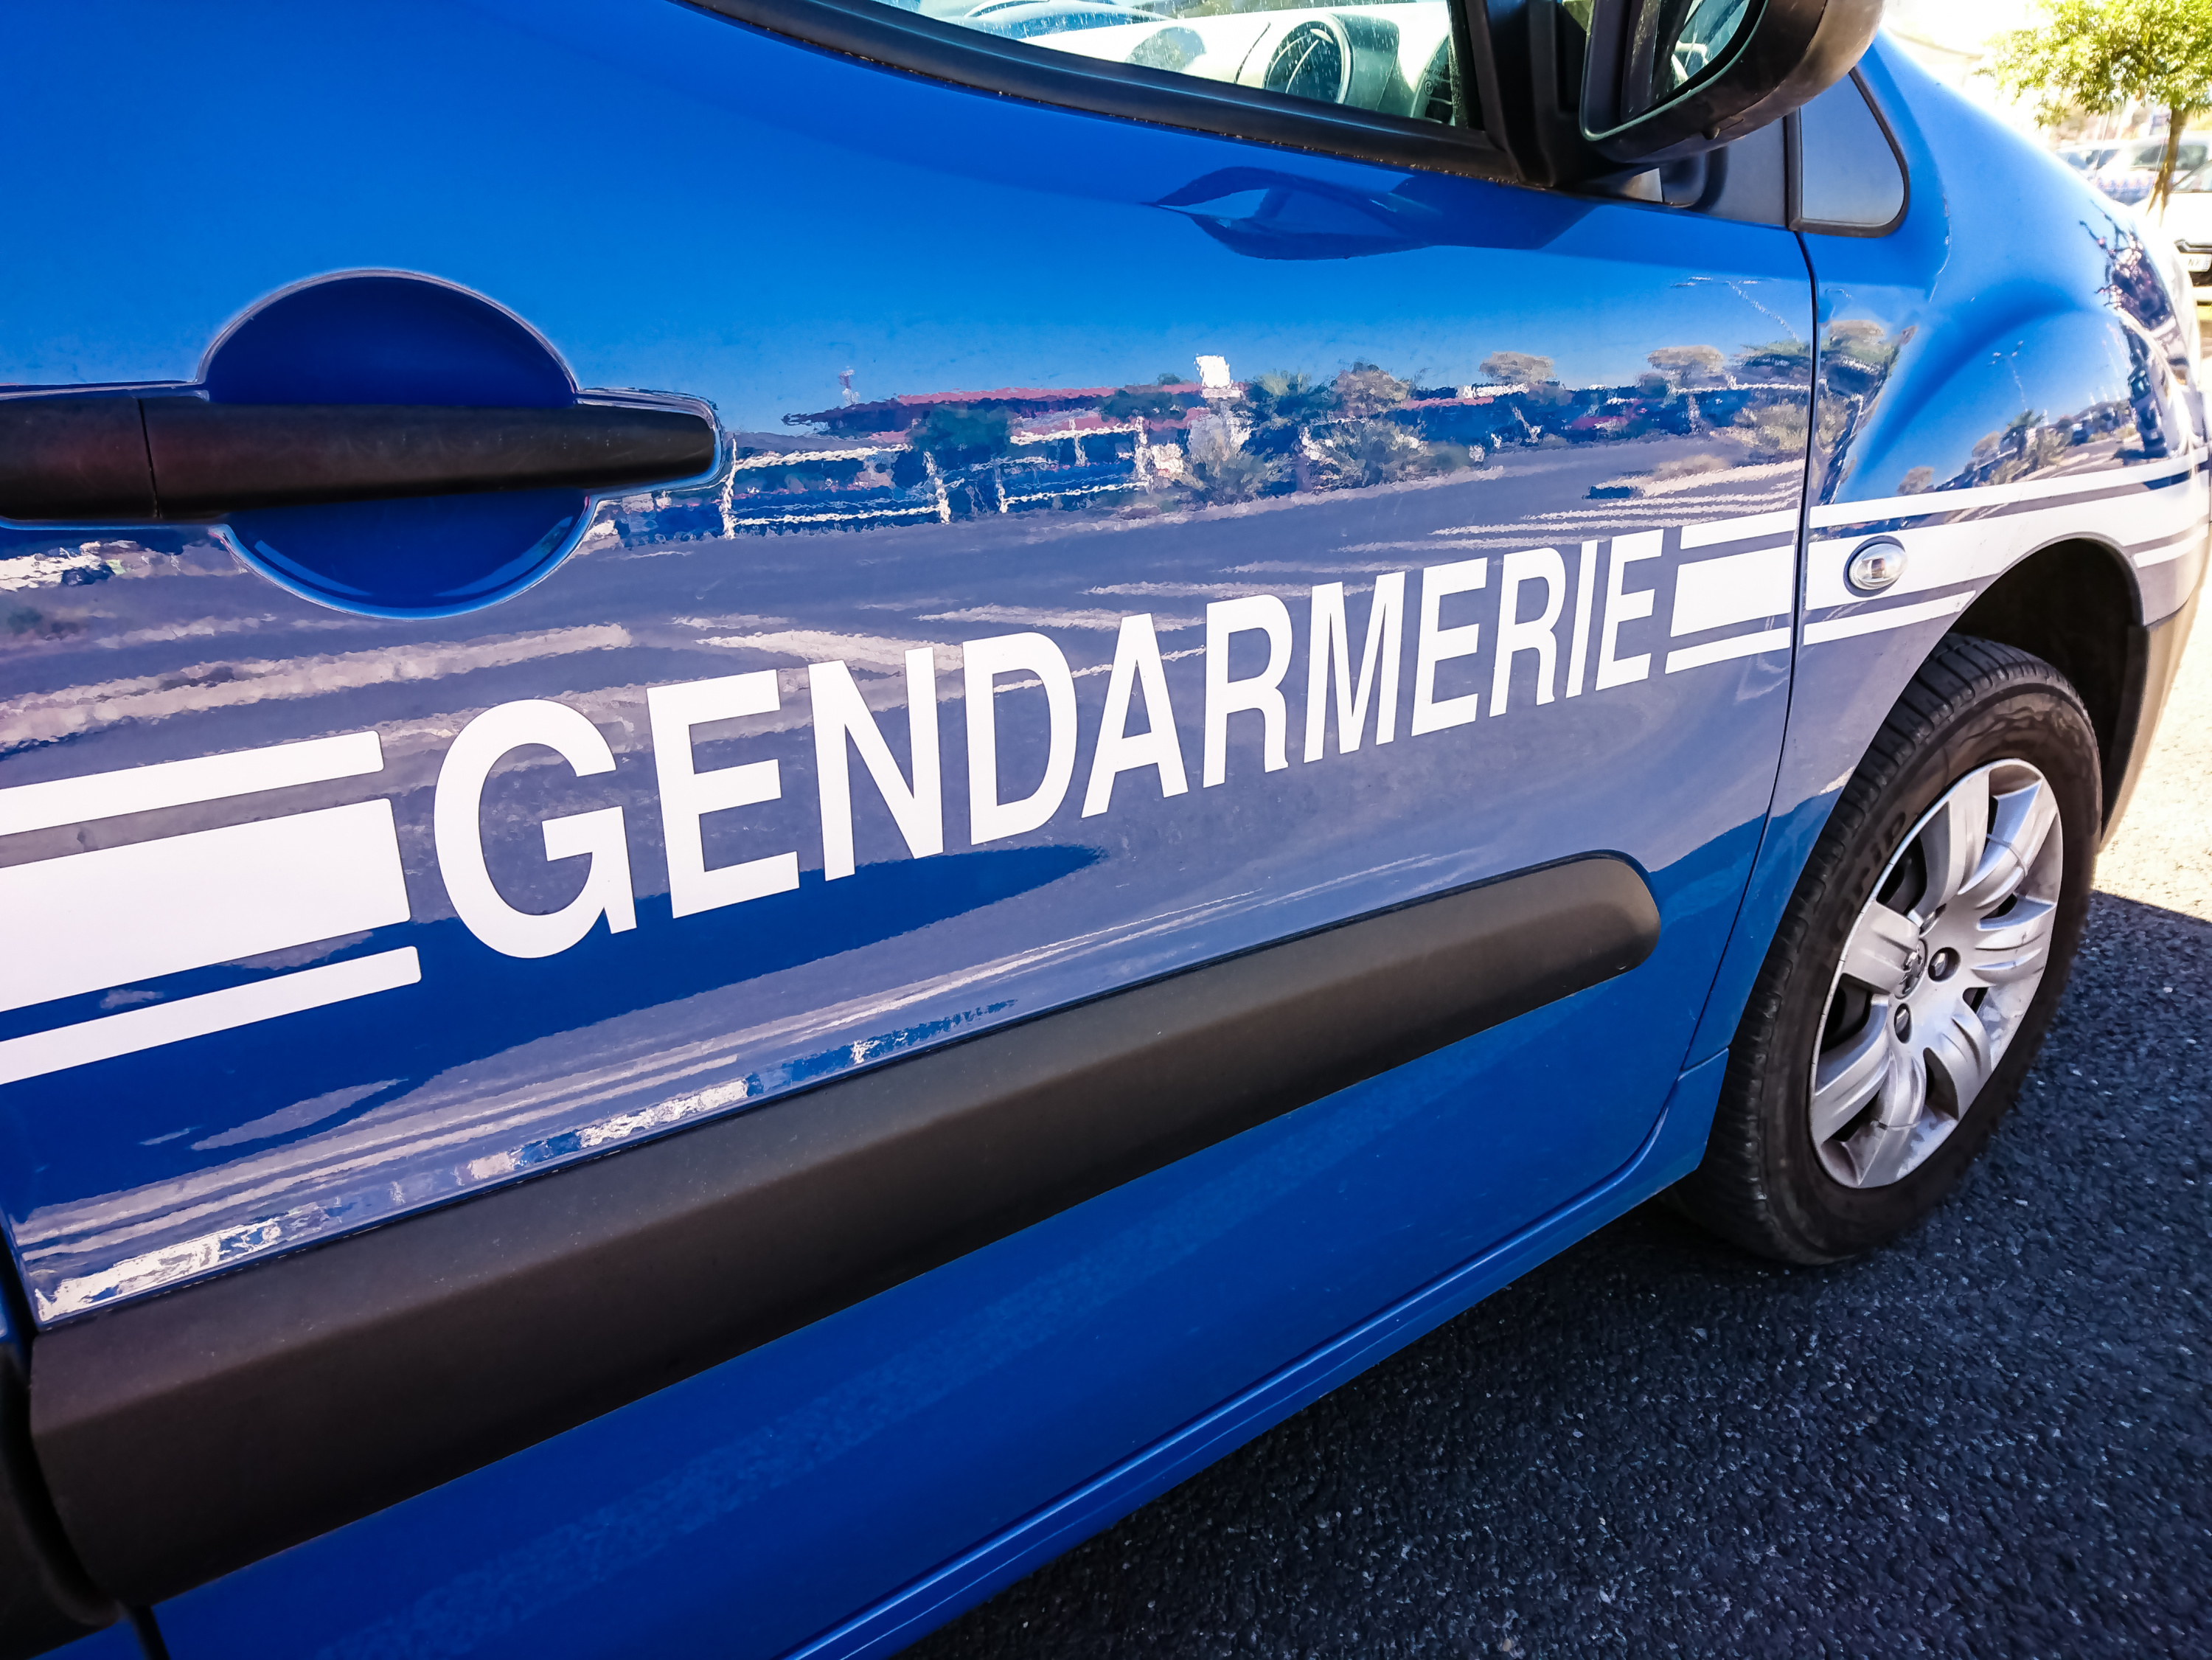 Fausse voiture de la gendarmerie : Je ne pensais pas enfreindre la loi, je  ne suis pas un délinquant - France Bleu